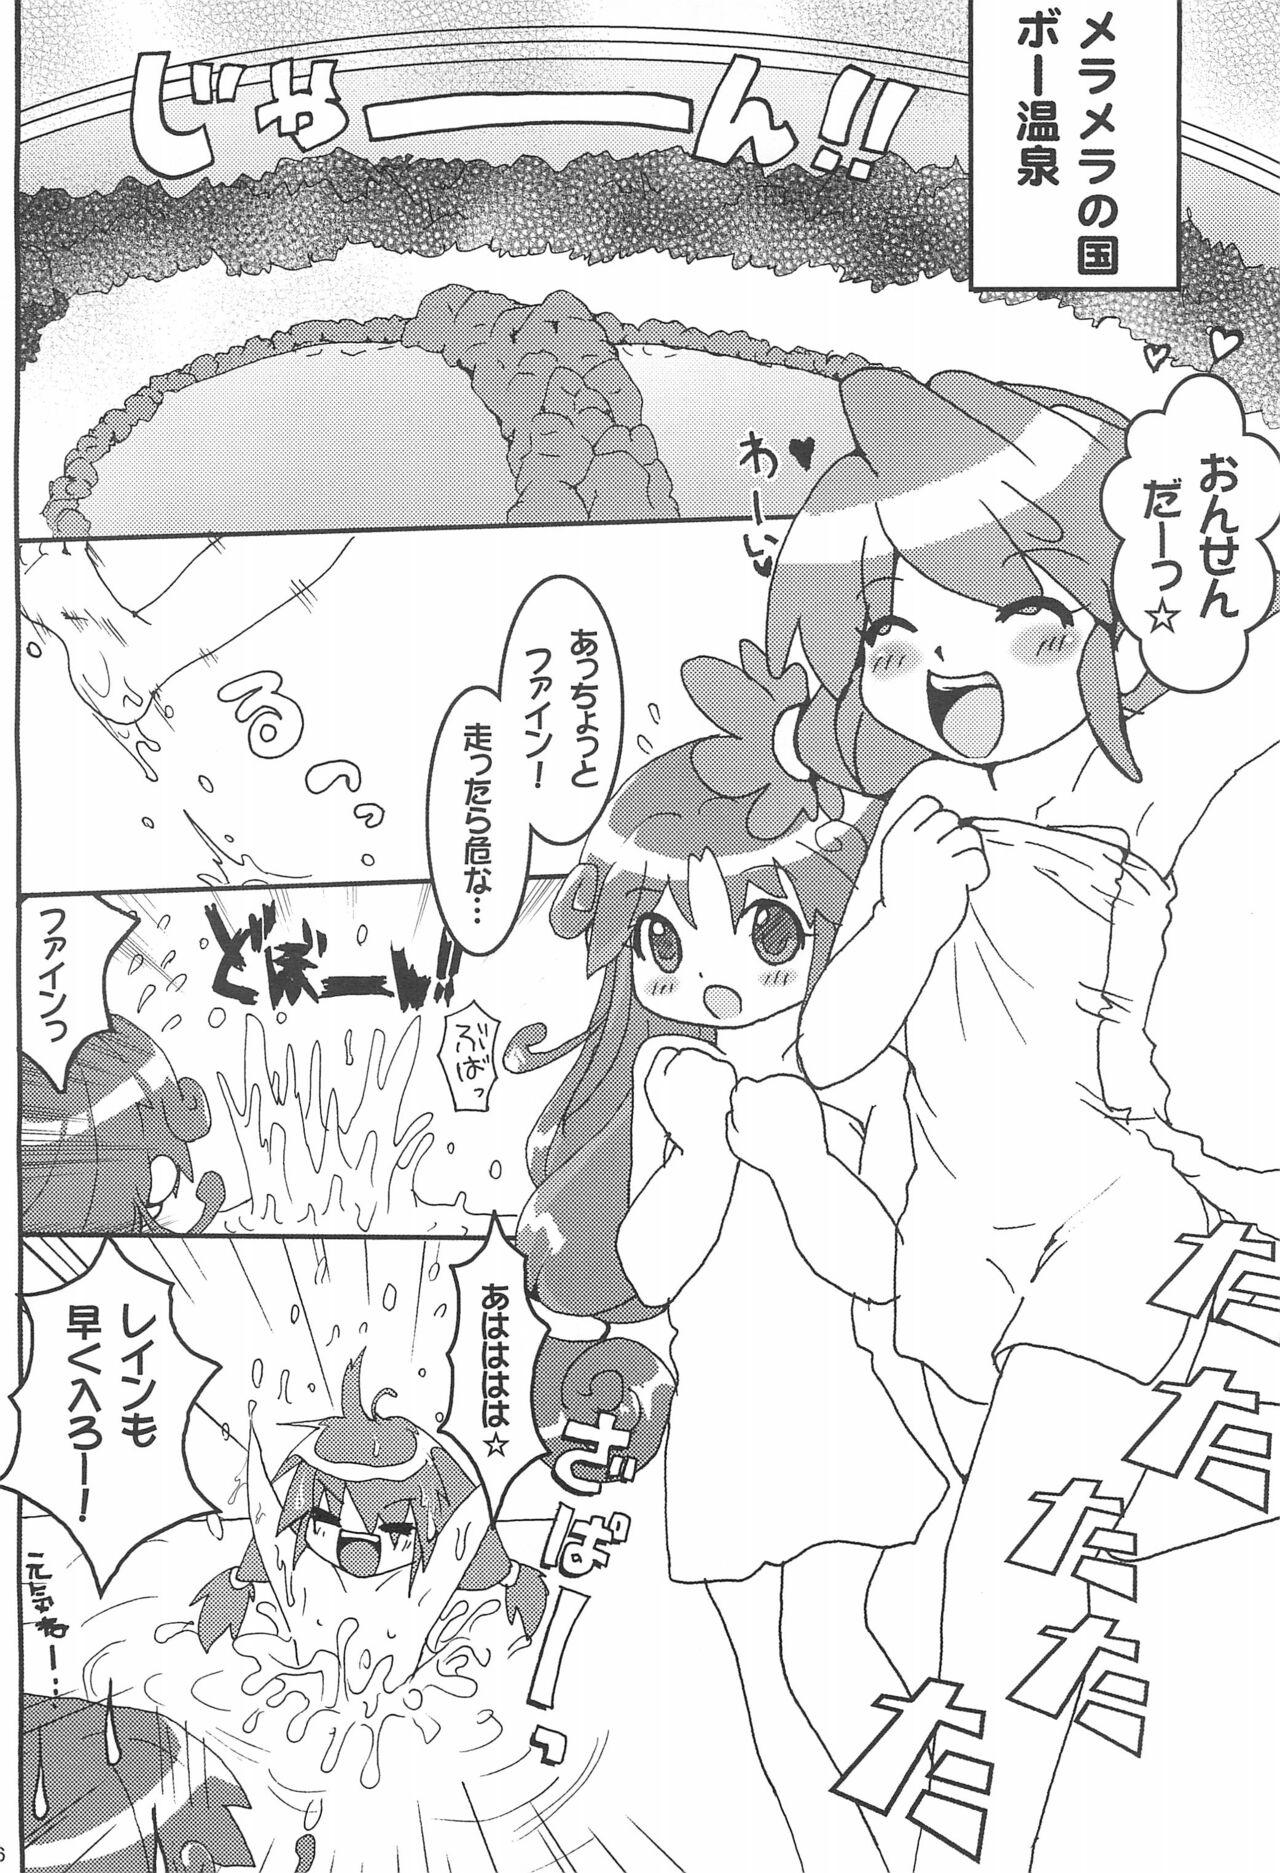 Wet Futanari Twinkle - Fushigiboshi no futagohime | twin princesses of the wonder planet Camgirl - Page 6